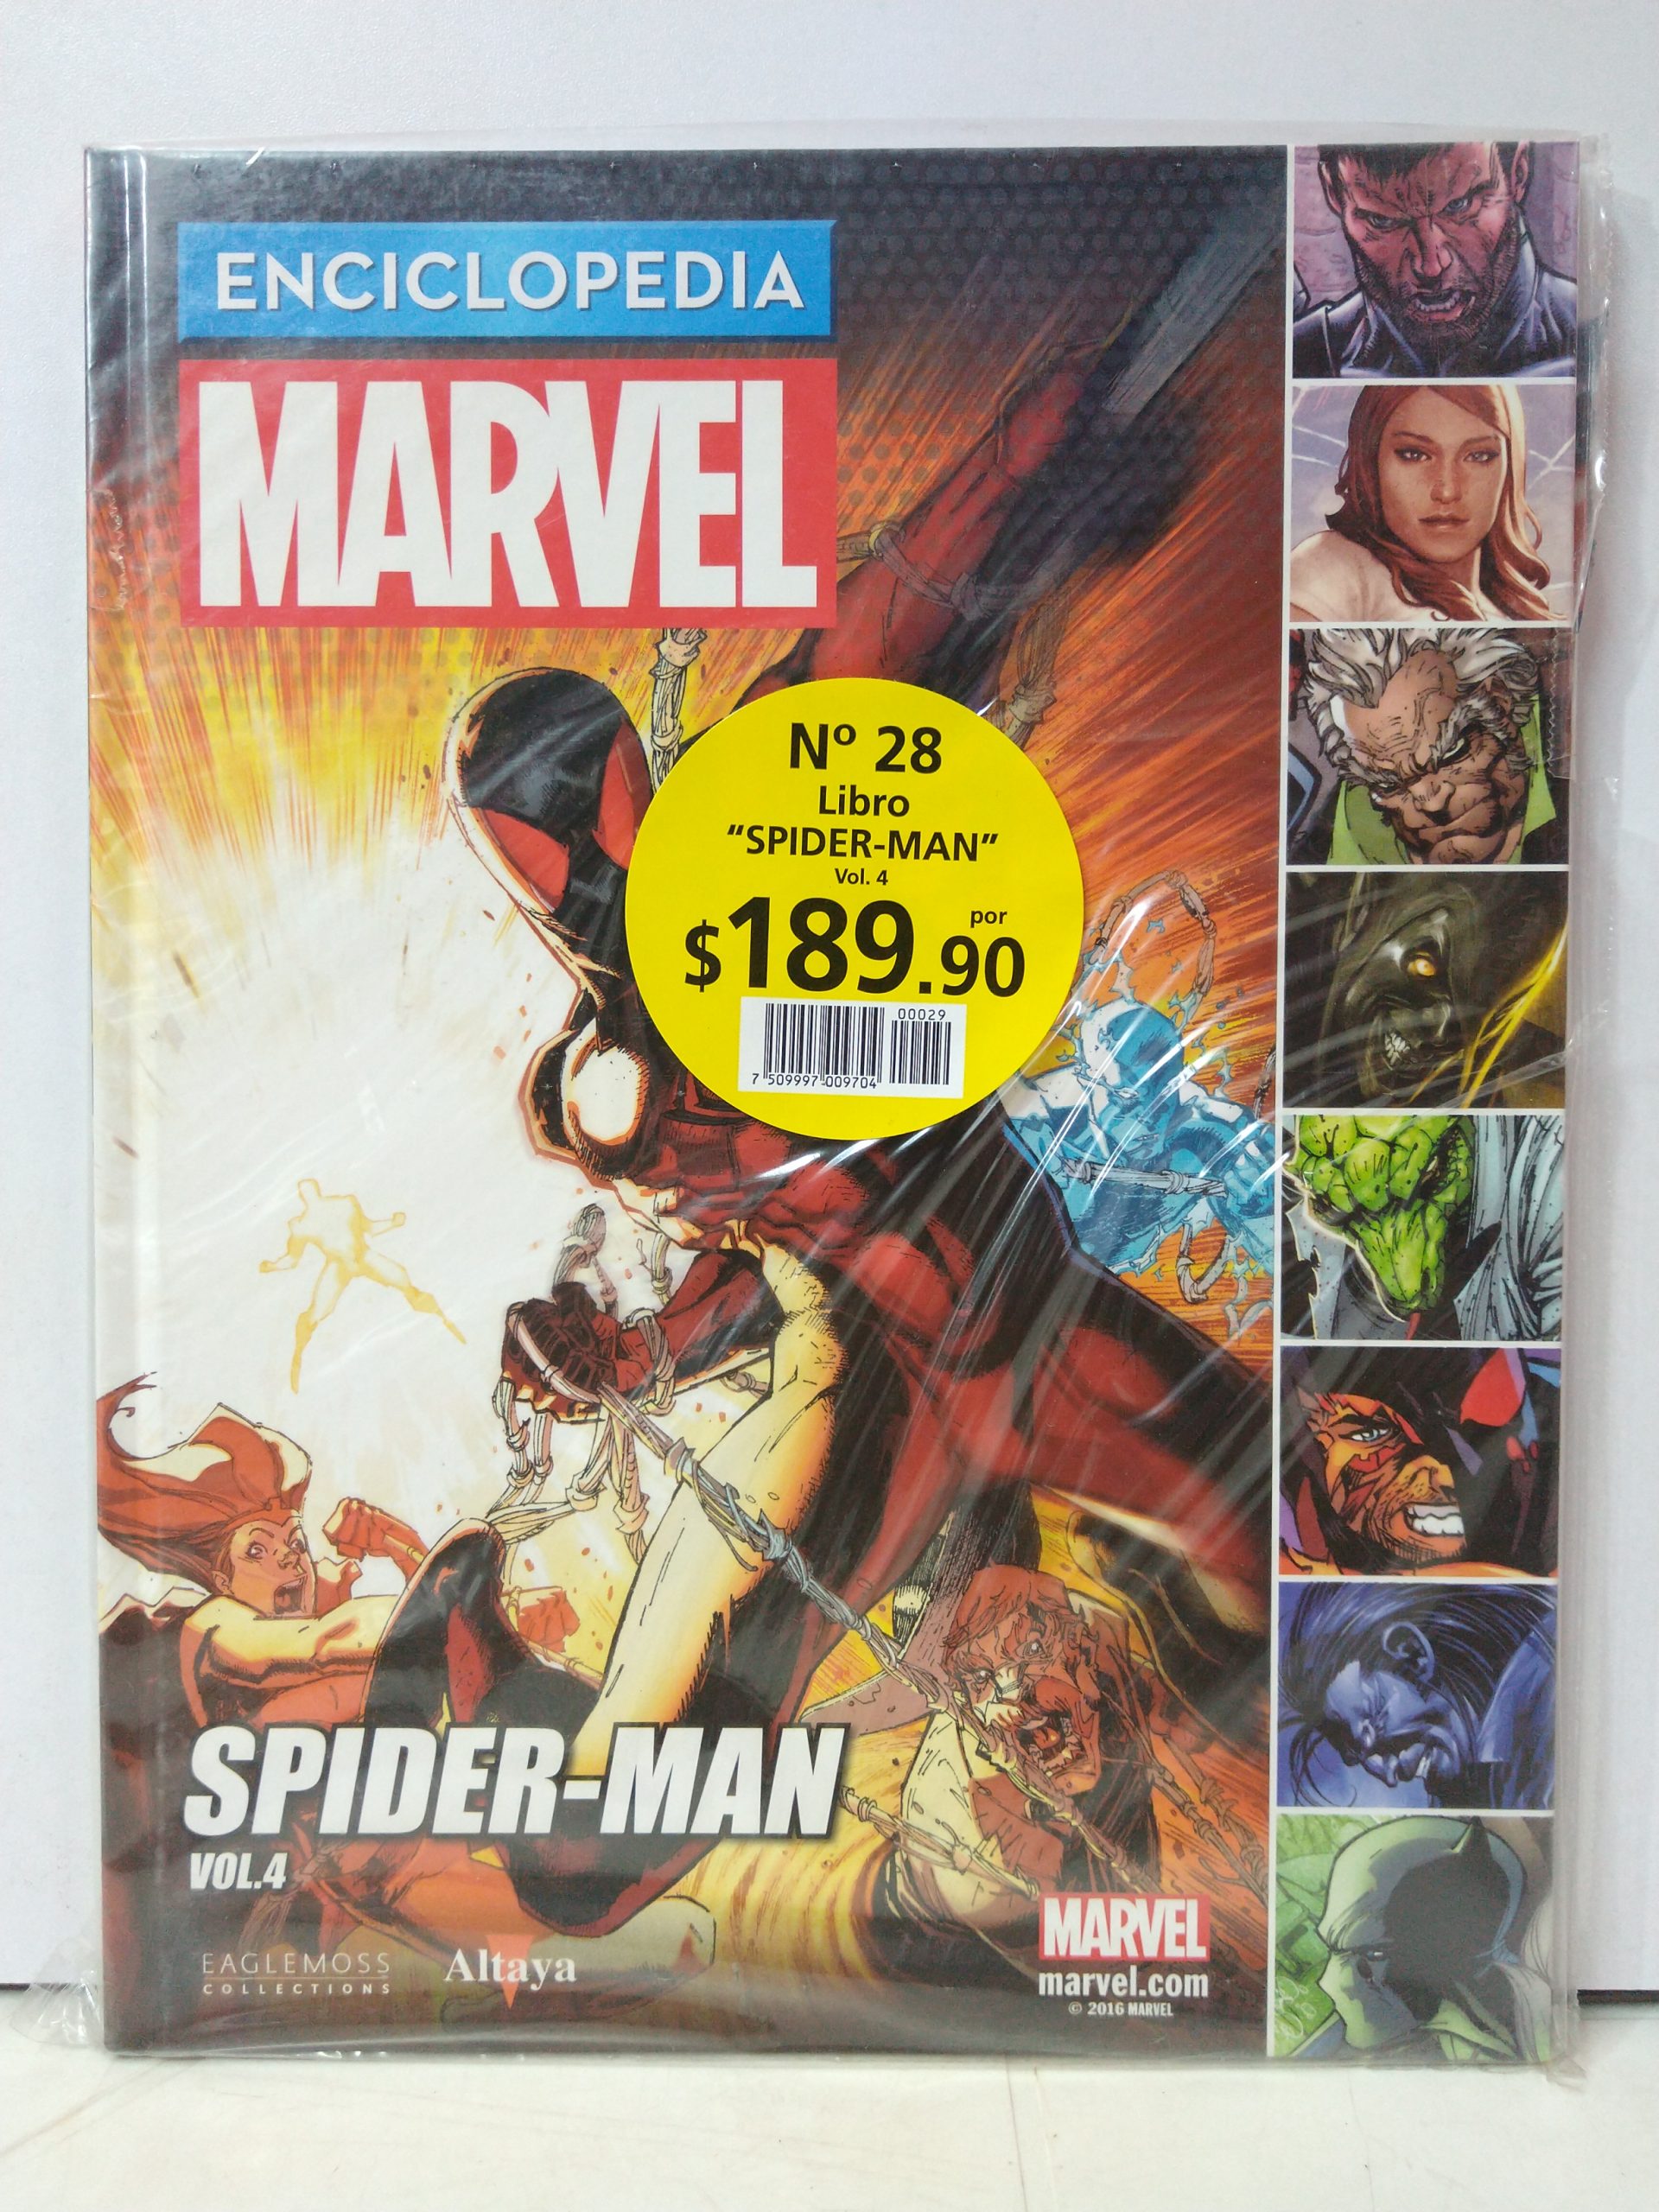 Enciclopedia Marvel Entrega 28, Libro 29: Spider-Man Vol. 4 - CodeX